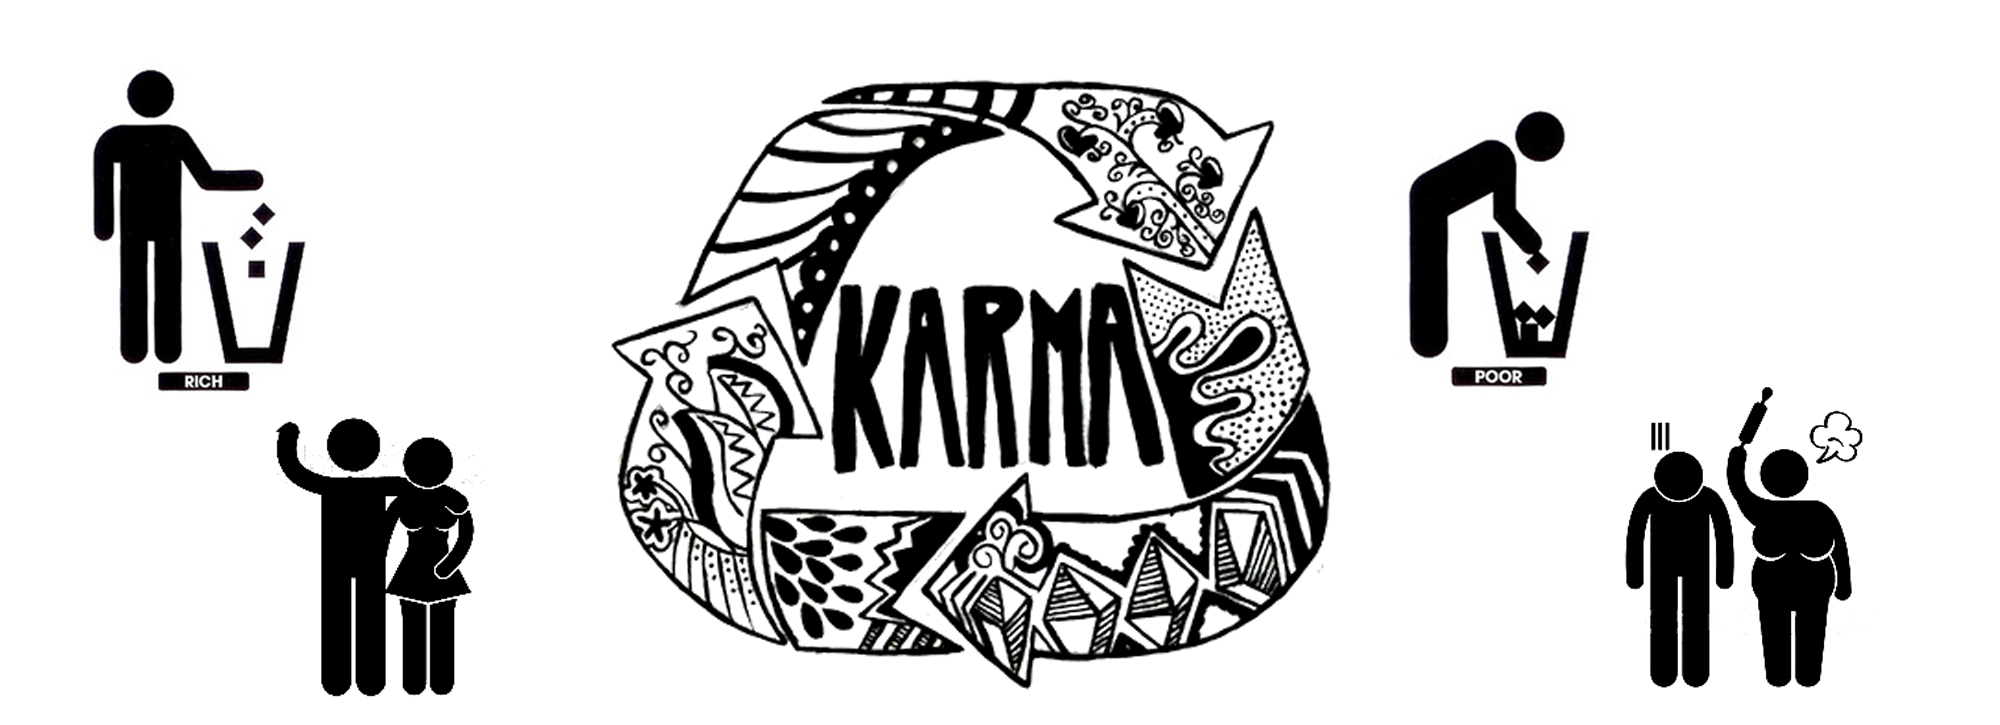 karma-2